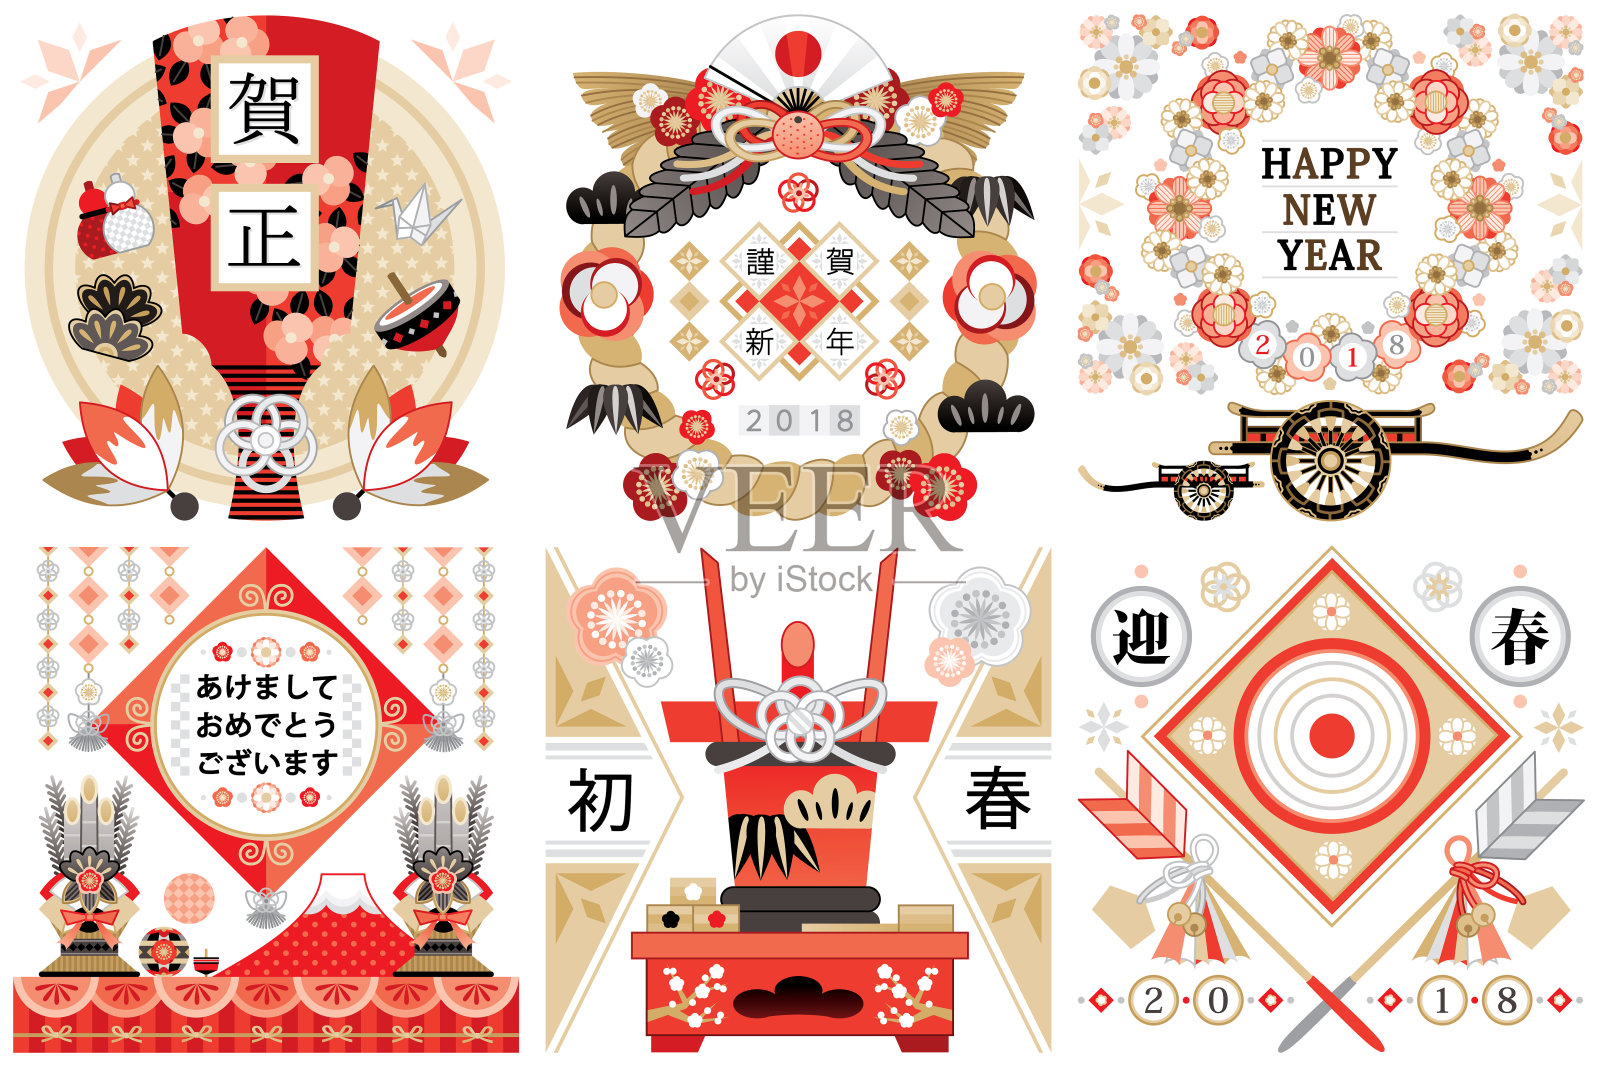 年卡日式插画设计形象素材《新年快乐》插画图片素材